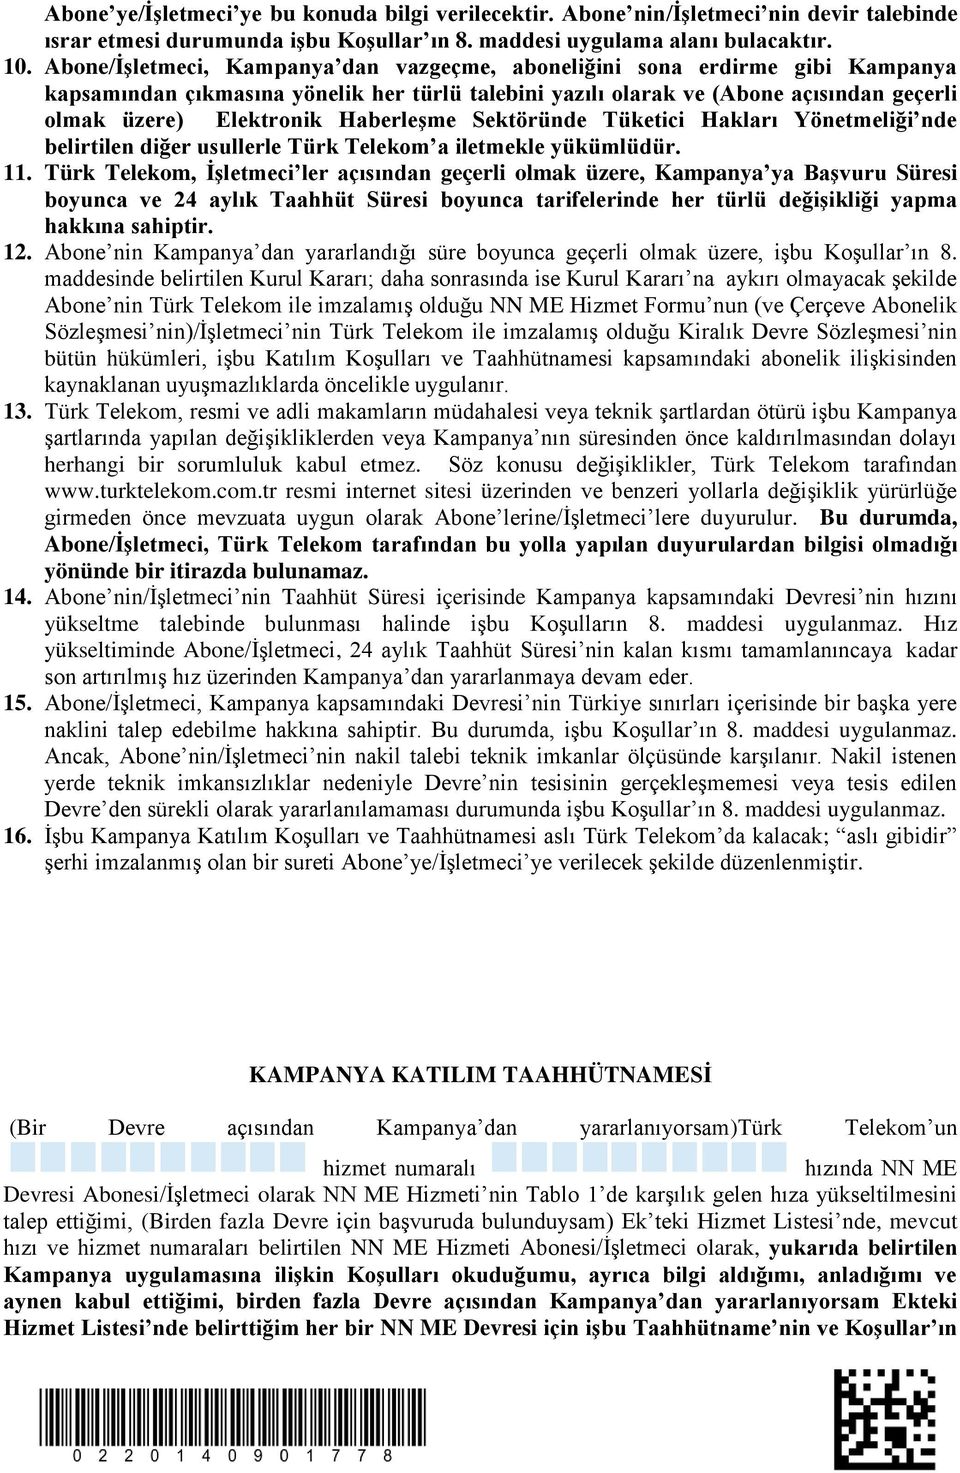 Haberleşme Sektöründe Tüketici Hakları Yönetmeliği nde belirtilen diğer usullerle Türk Telekom a iletmekle yükümlüdür. 11.